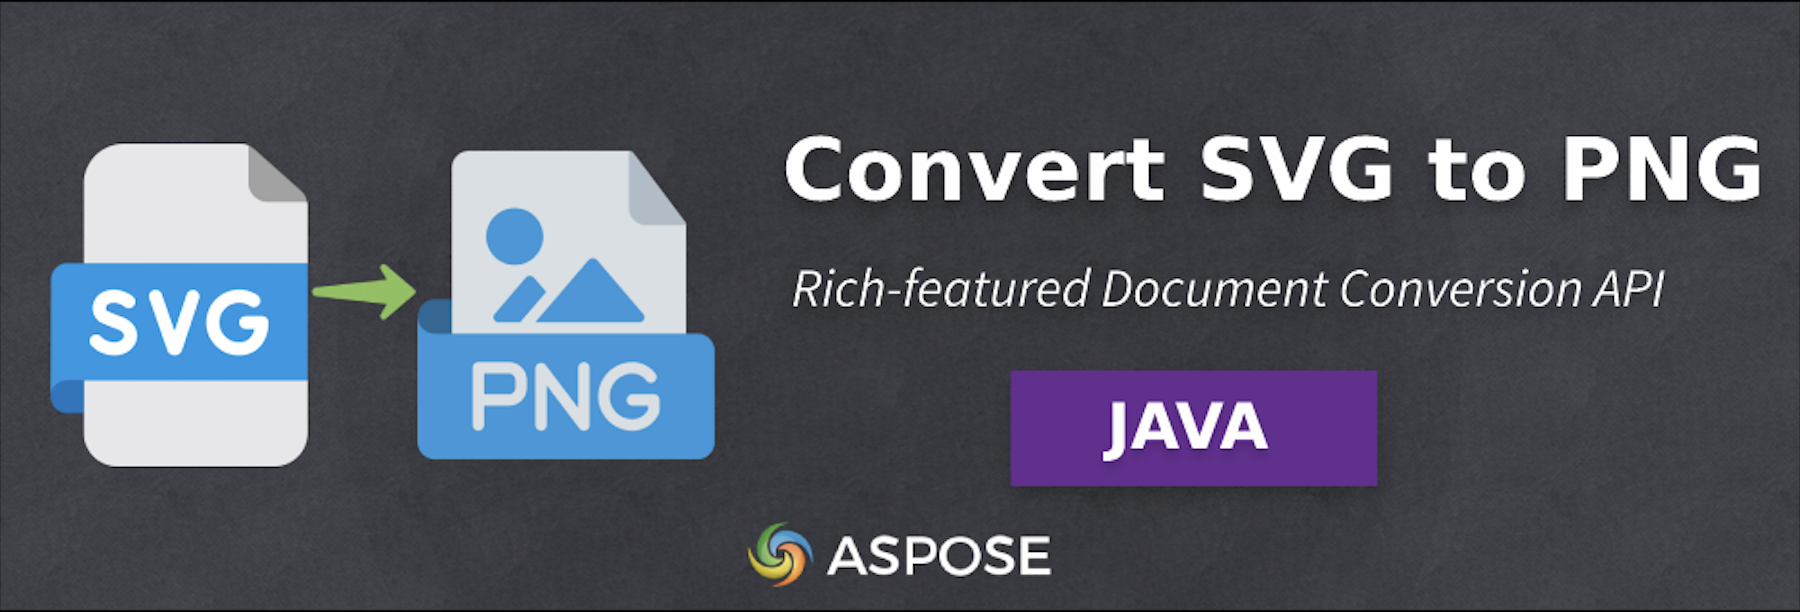 Конвертируйте SVG в PNG в Java — программа для преобразования изображений